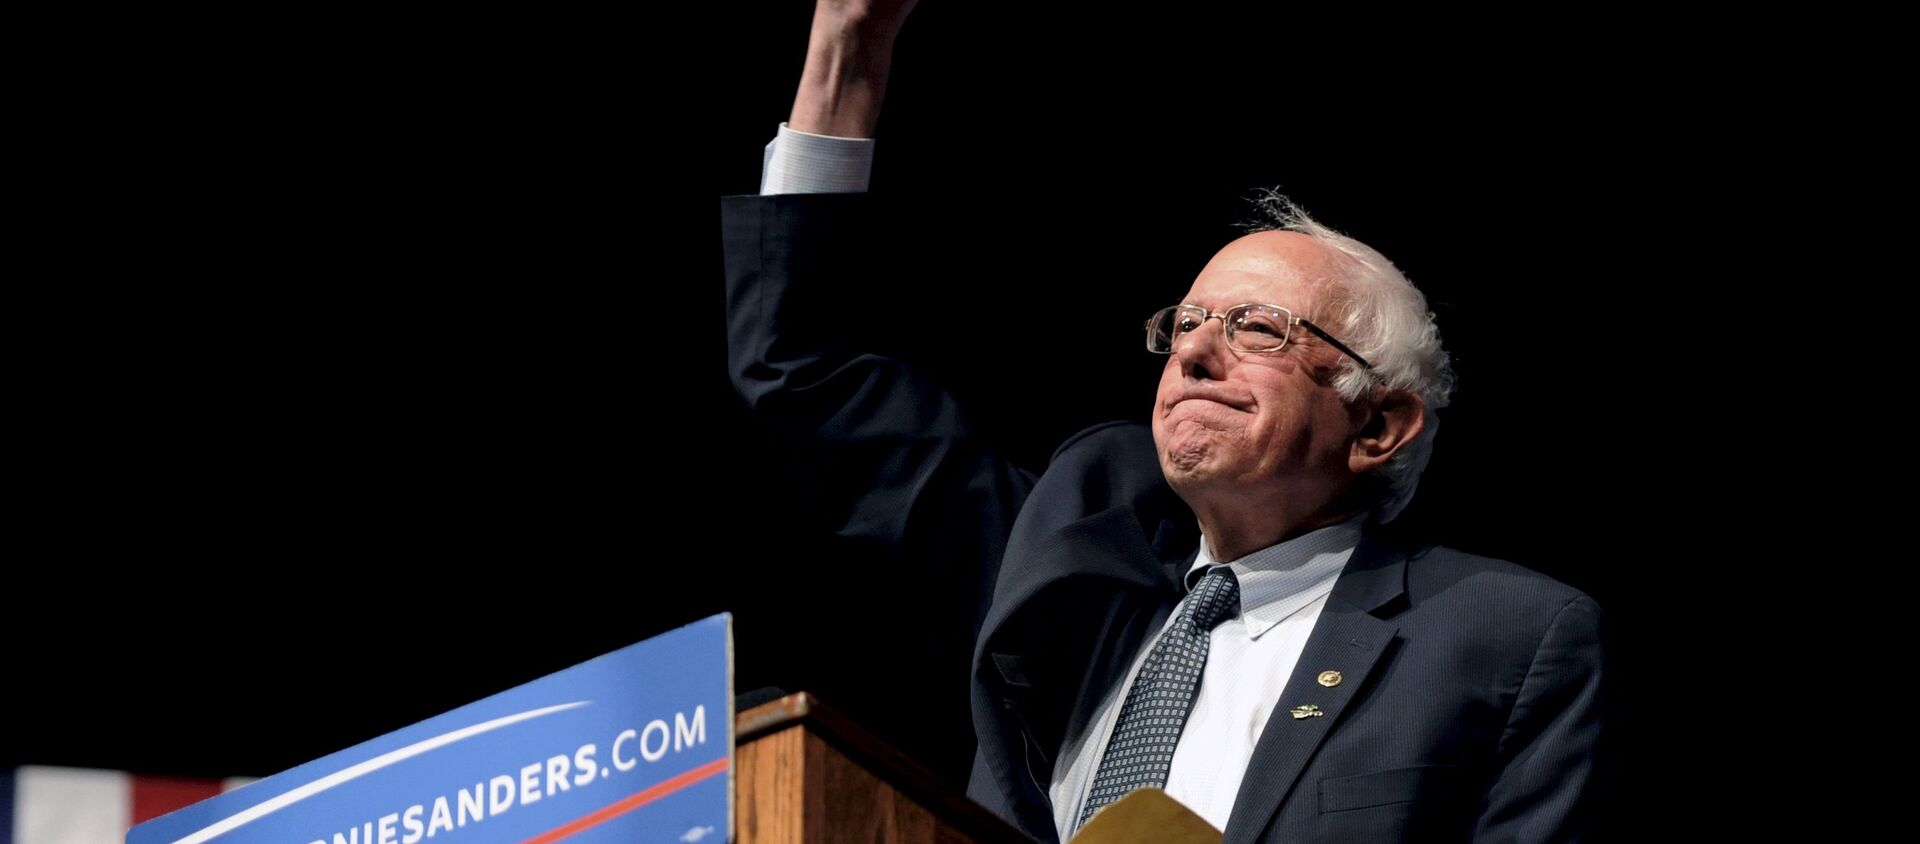 Sanders, “Wisconsin’le birlikte son 8 ön seçimin 7’sini kazandık” diyerek zaferini ilan etti. Clinton da Sanders’a tebrik mesajı gönderdi. - Sputnik Türkiye, 1920, 09.11.2016